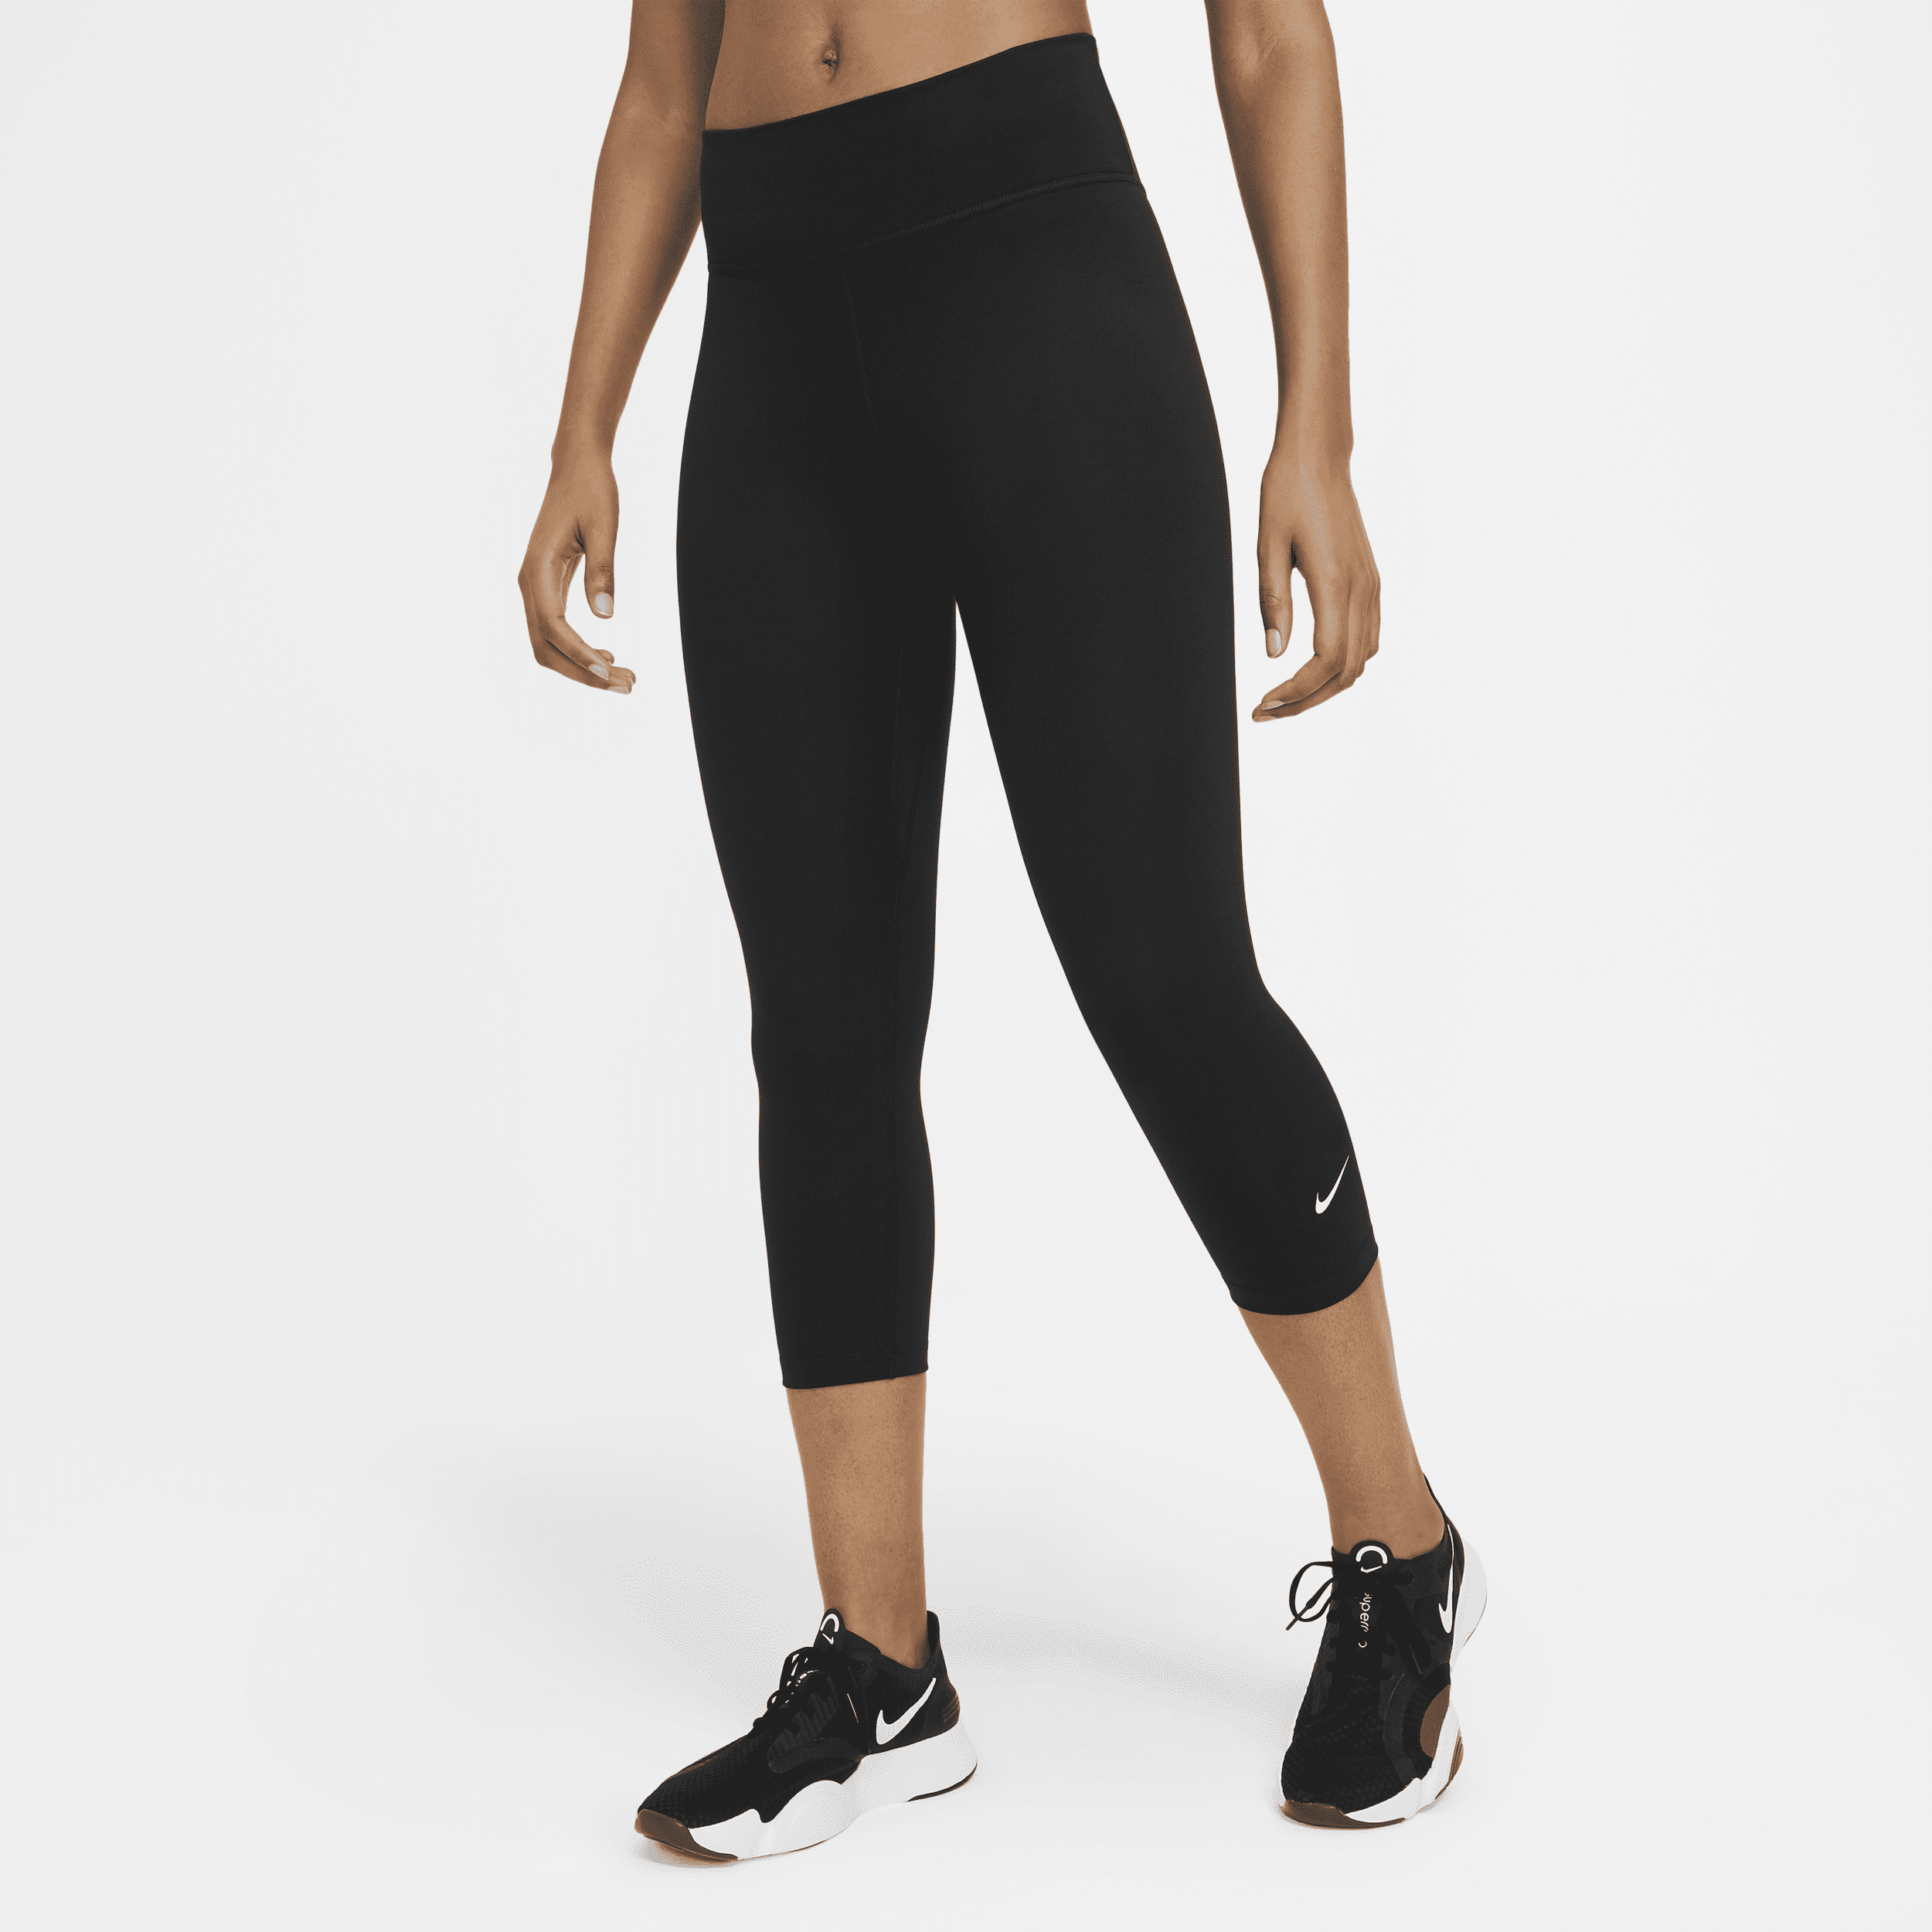 Nike One Caprilegging met halfhoge taille voor dames - Zwart